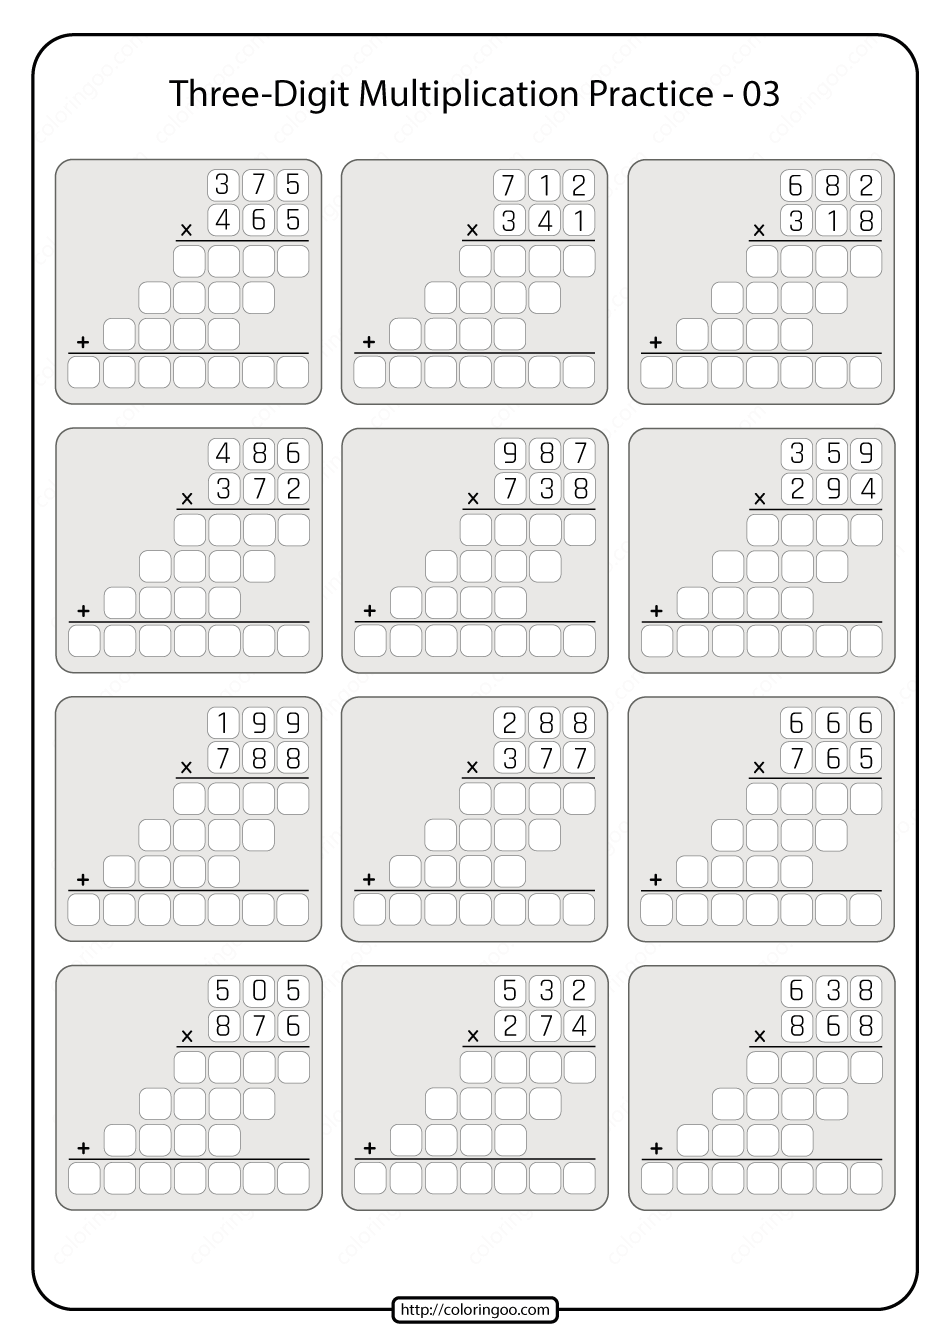 printable three digit multiplication practice worksheet 03